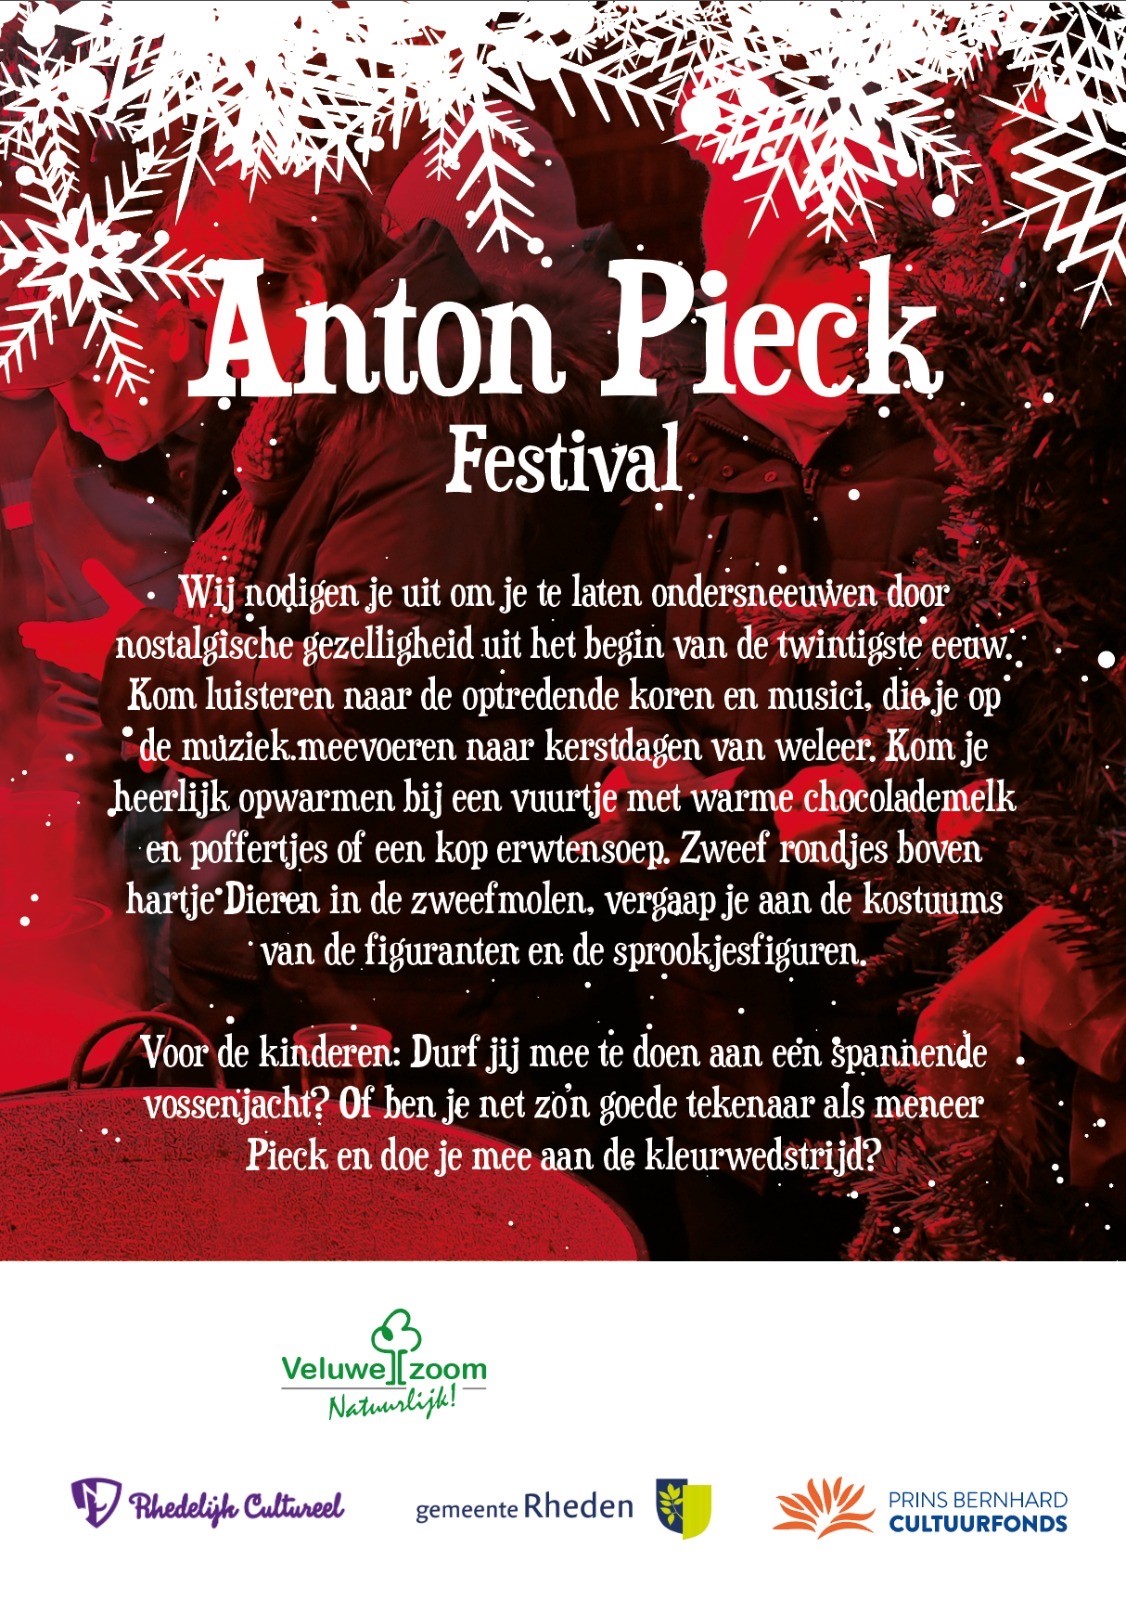 Anton Pieck Festival 14 dec 2019 2